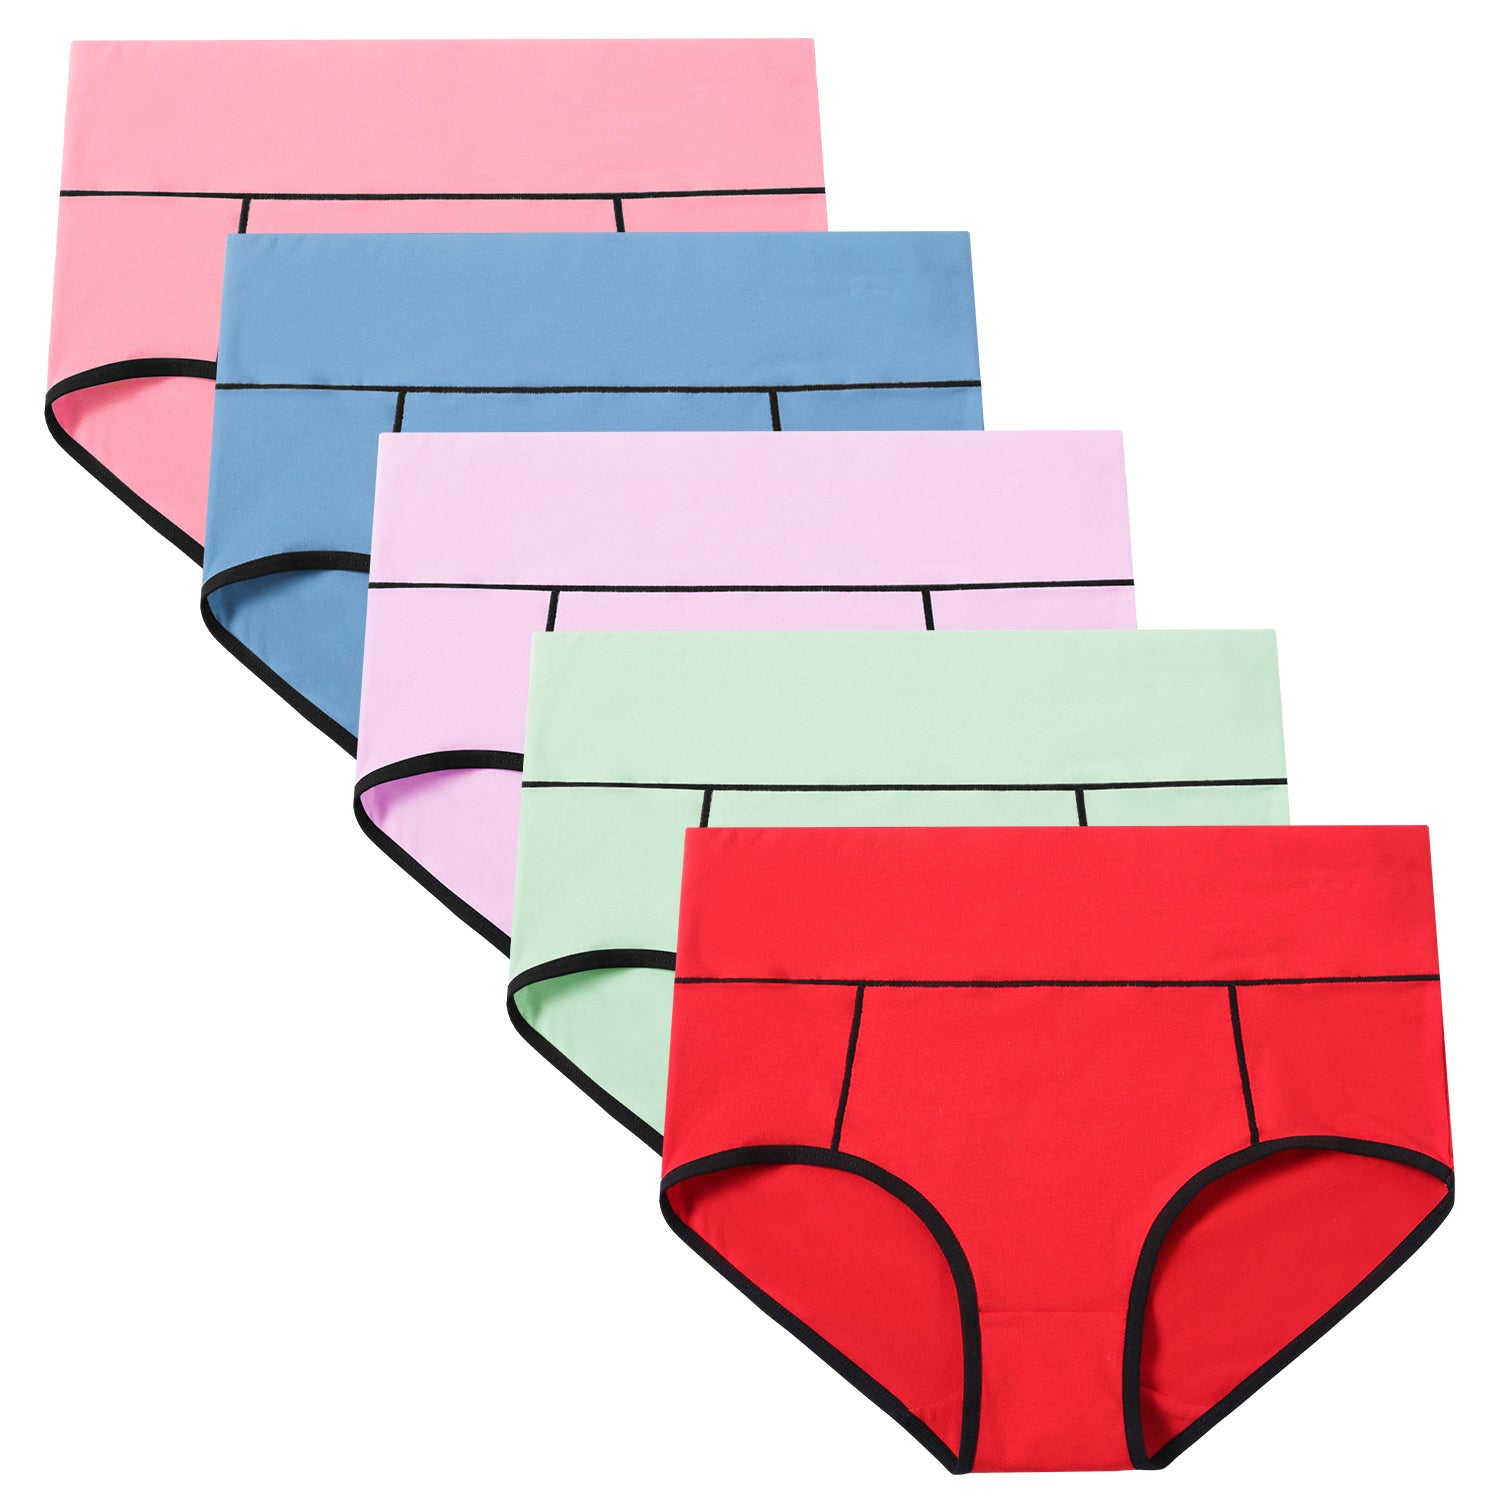 POKARLA Women's Hi-Cut Bikini Panties Soft Stretch Cotton